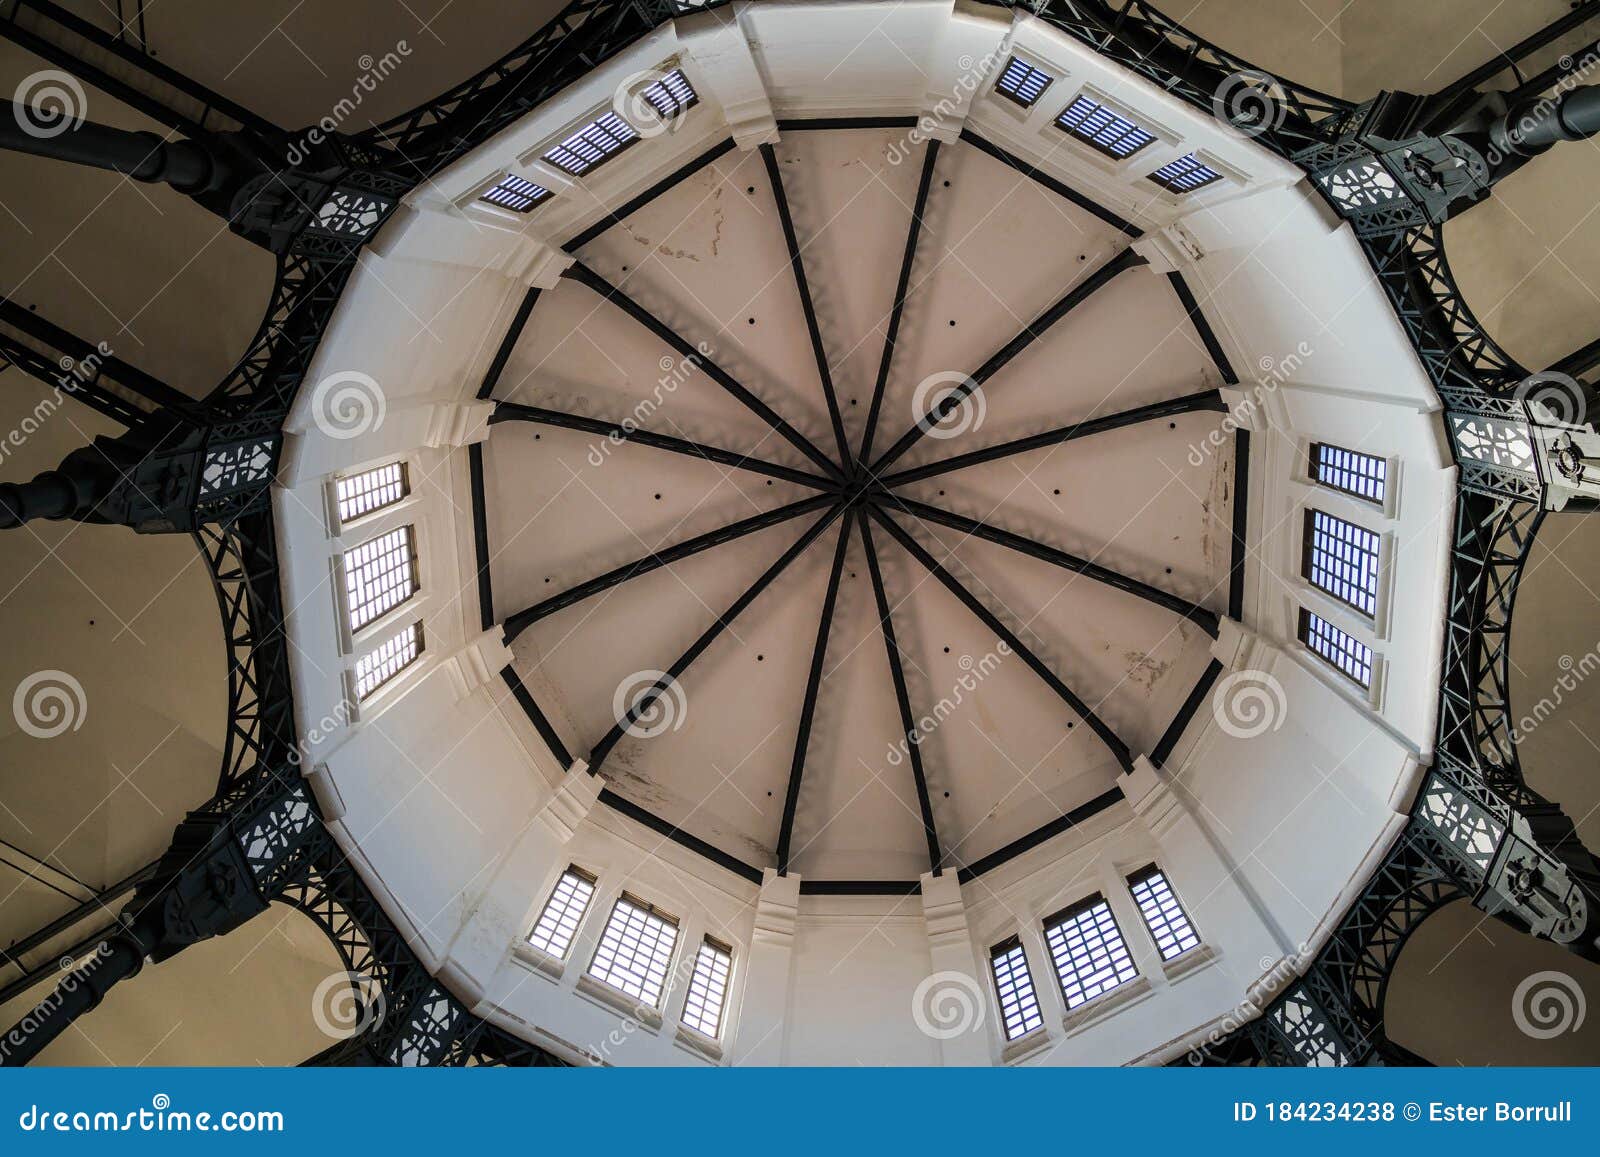 dome of the central gallery of la modelo prison in barcelona